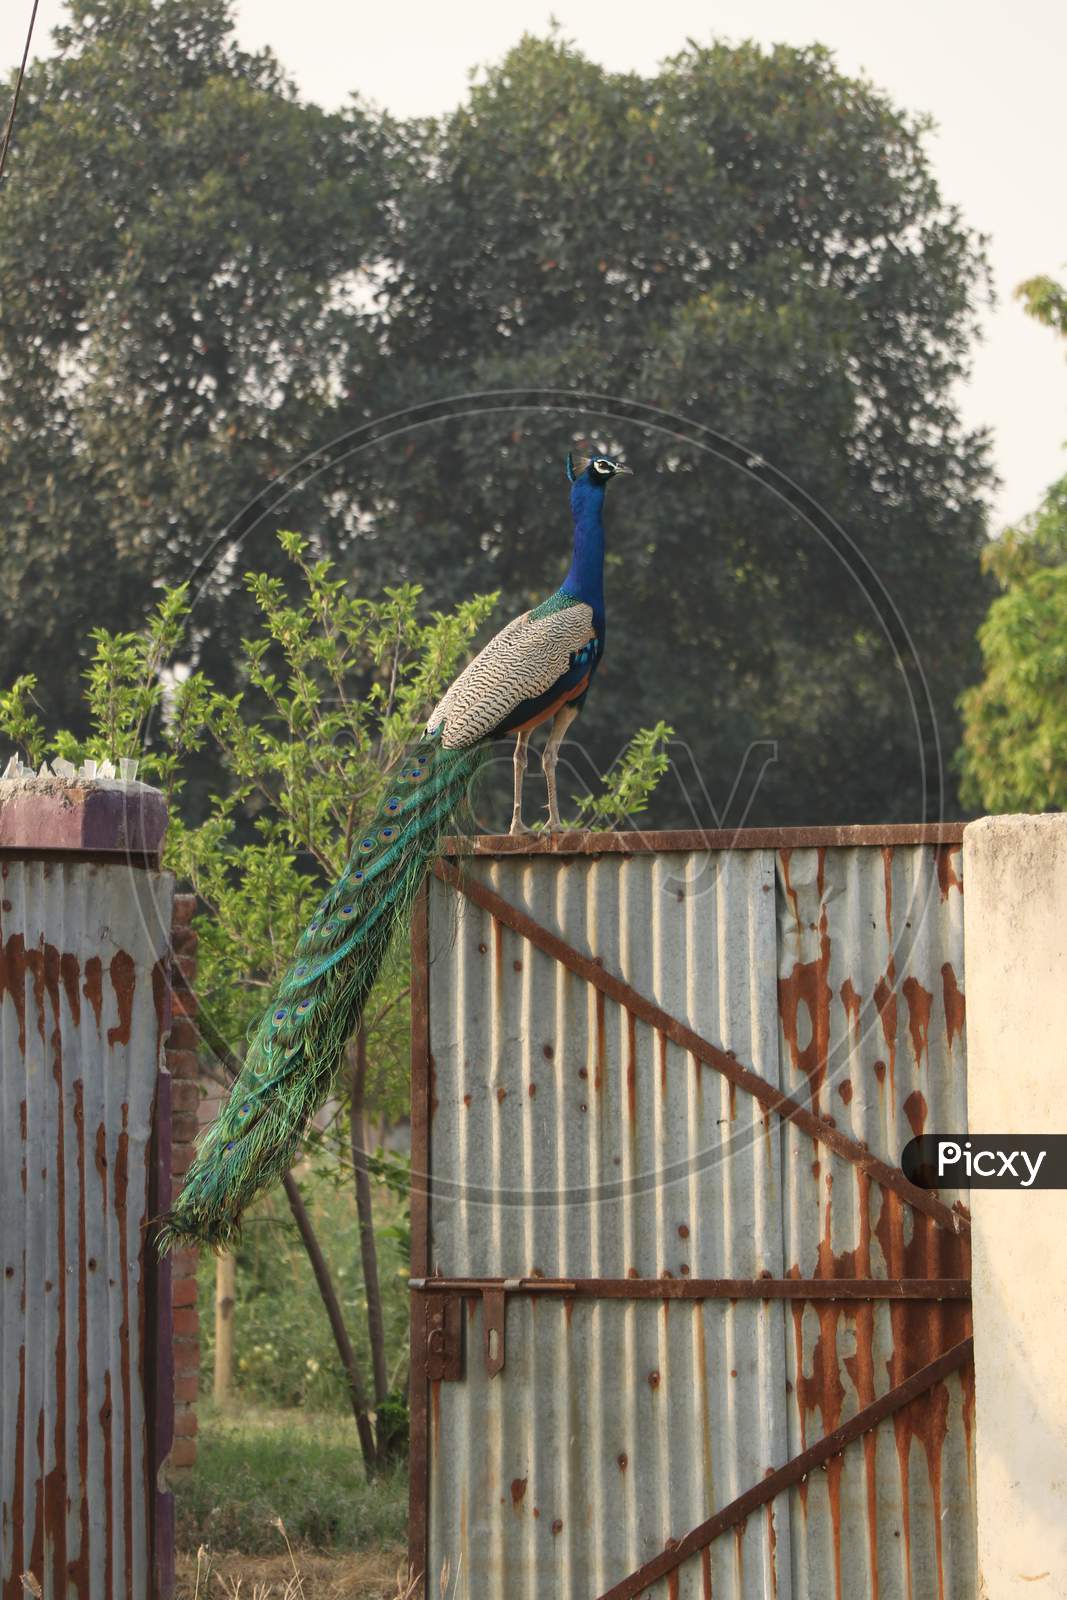 An Indian Peacock (National Bird of India)